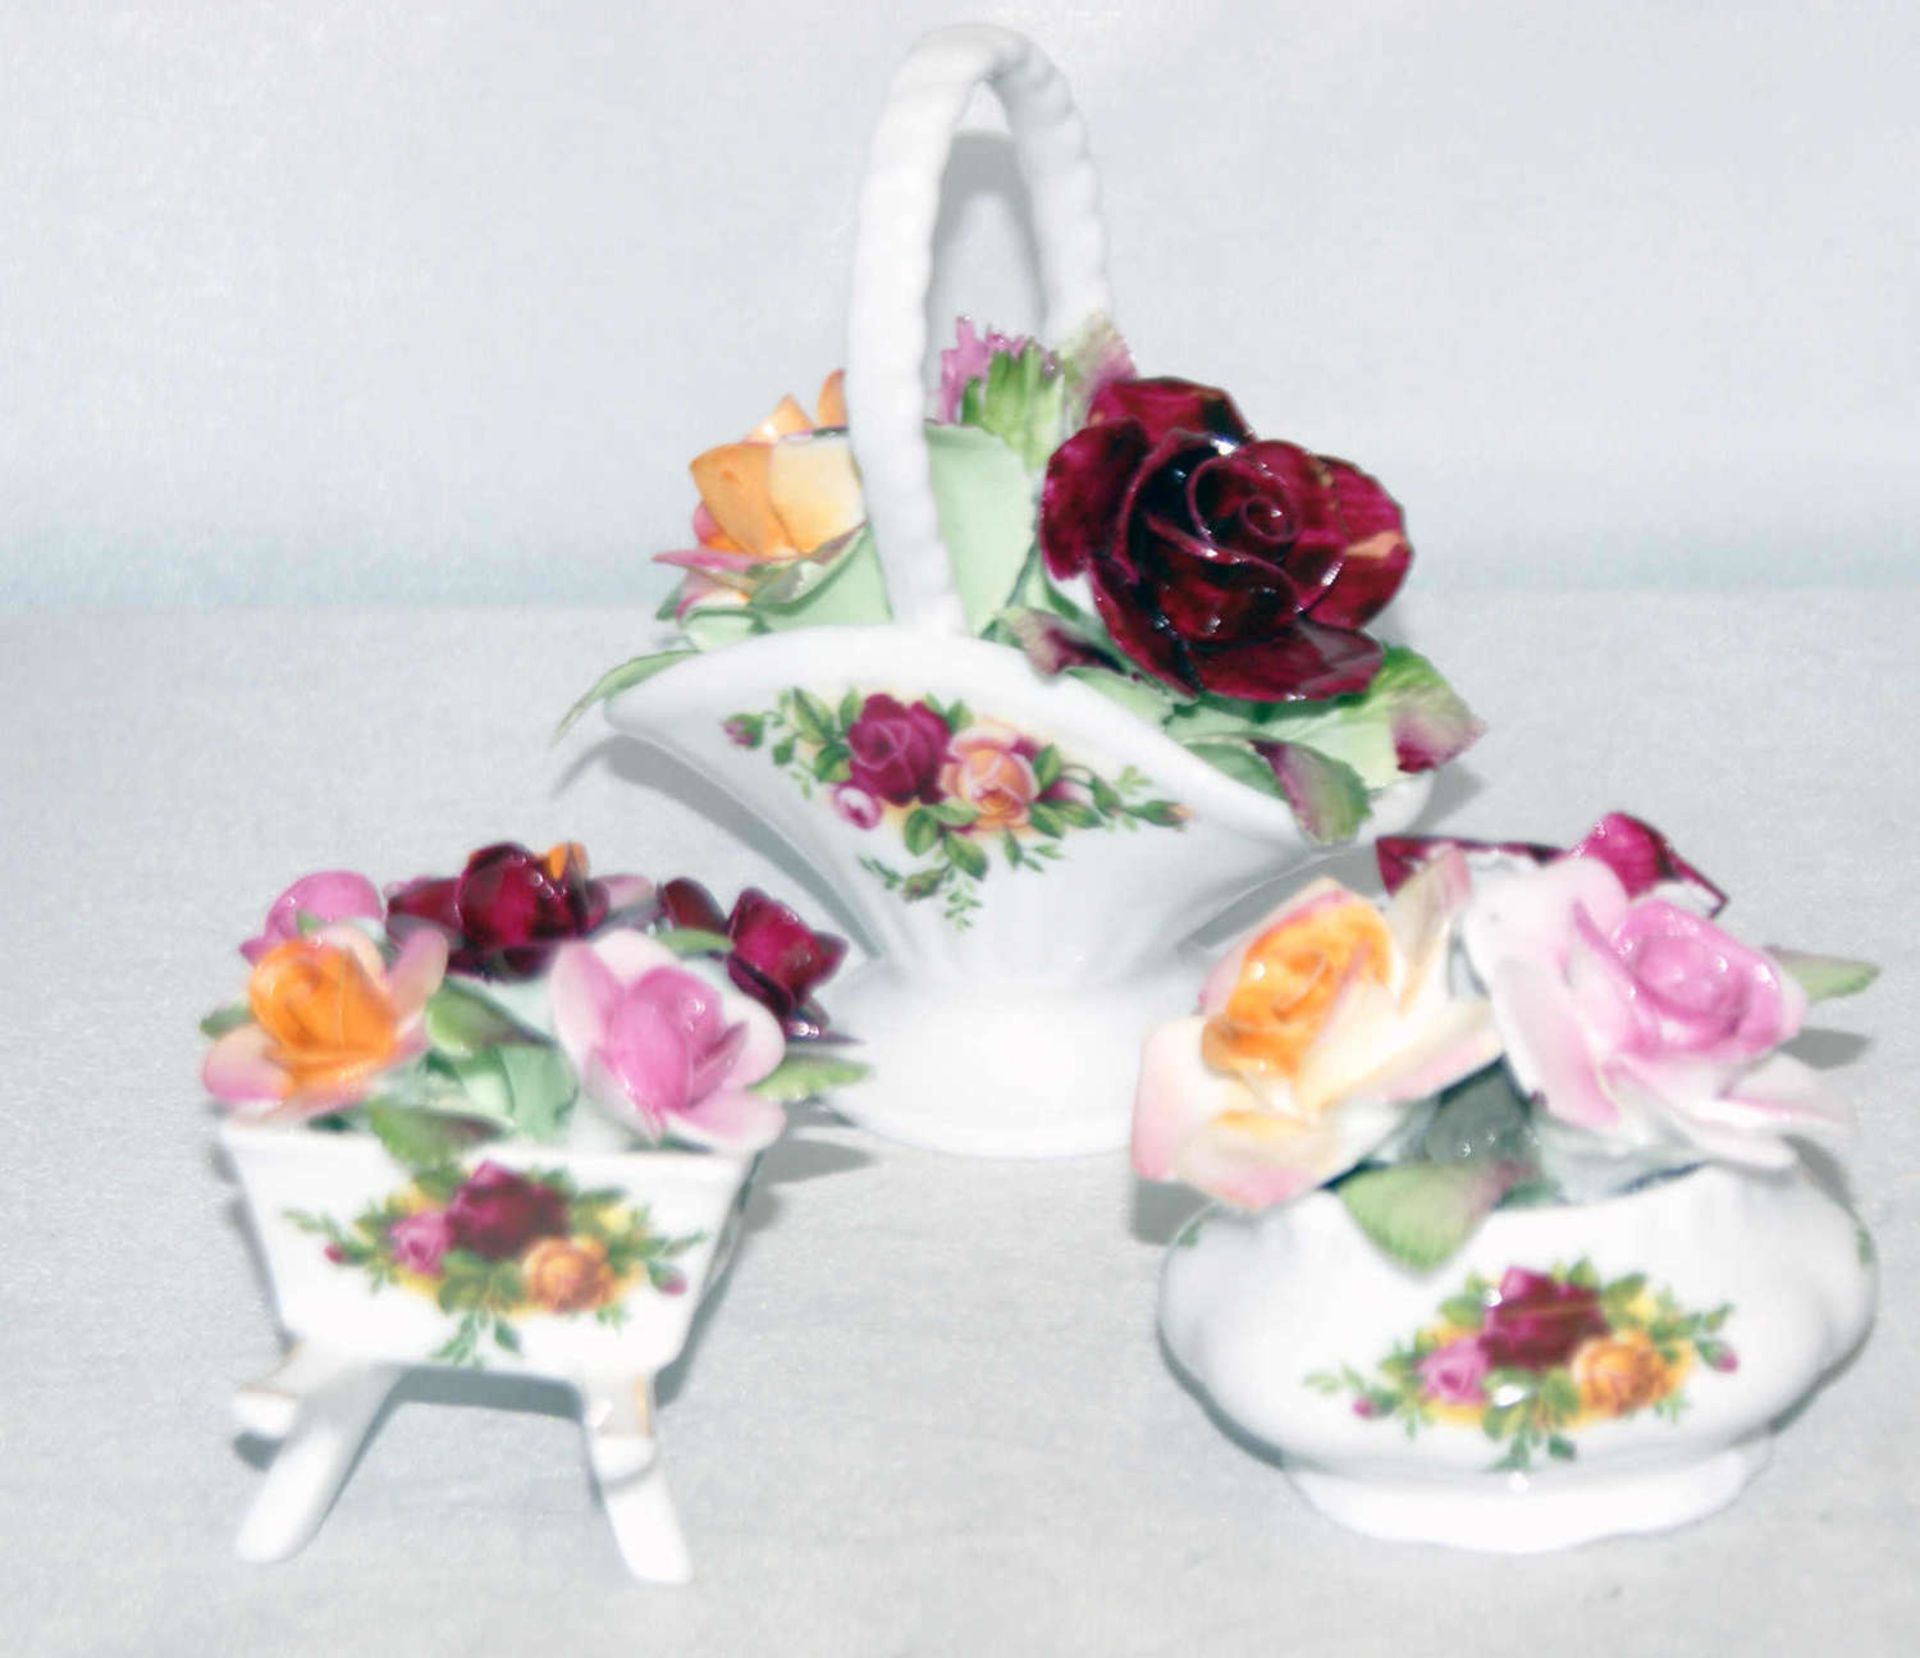 3 Teile Zierporzellan von Royal Albert "Old Country Roses", bestehend aus Blumenkorb, Blumenvase und